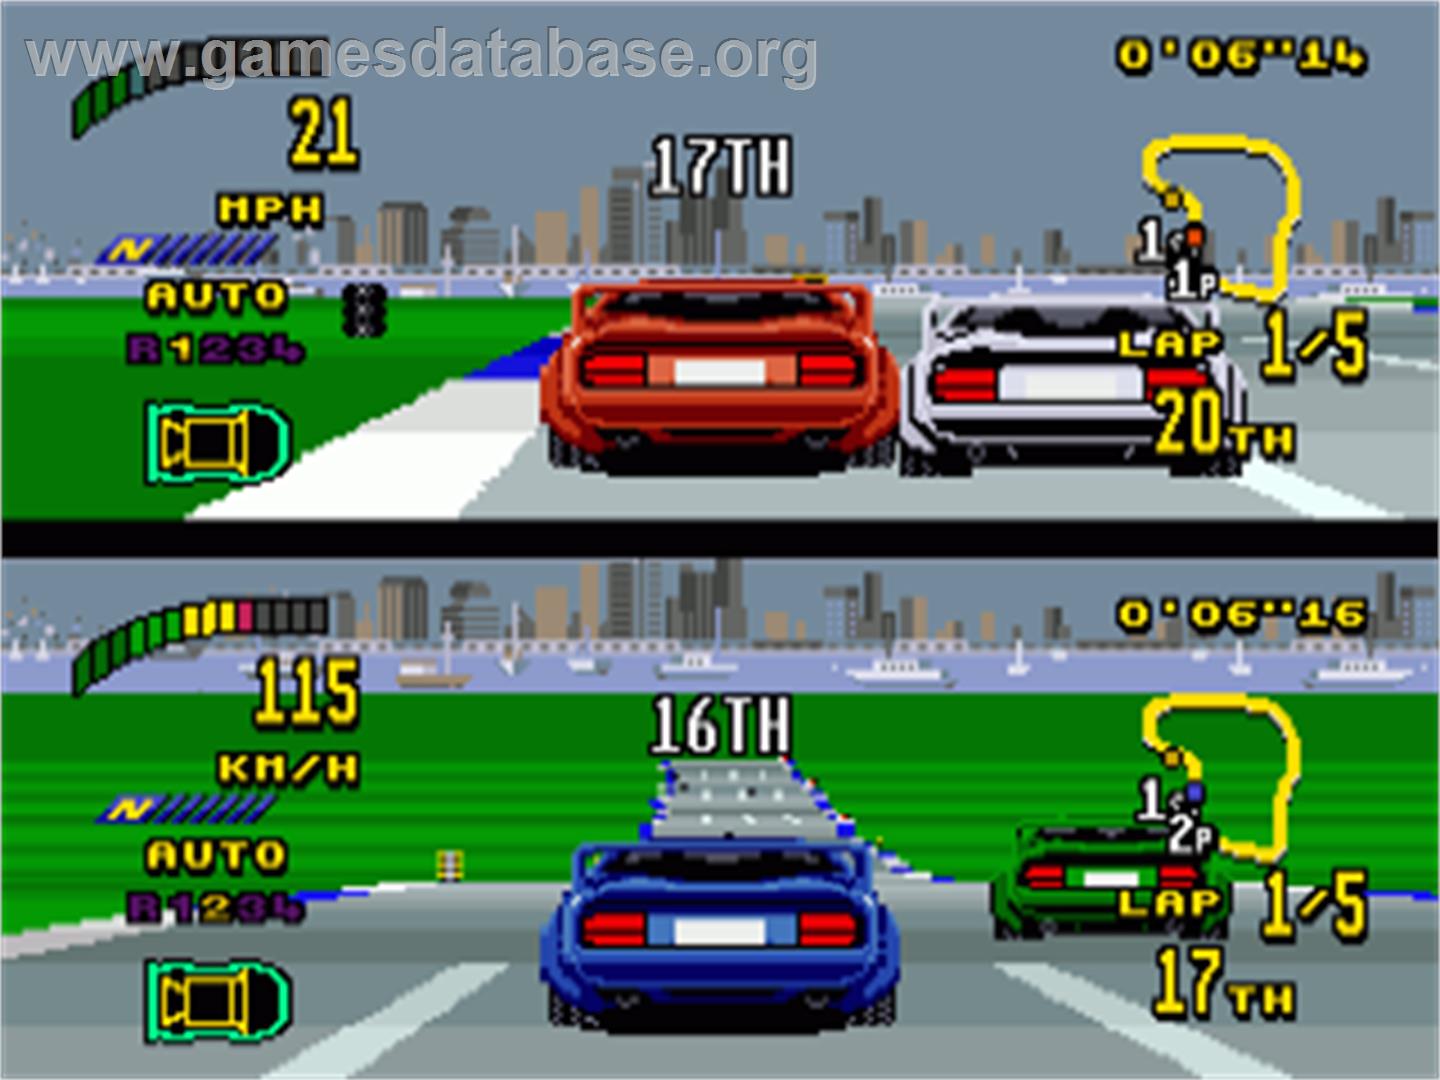 Top Gear 2 - Commodore Amiga - Artwork - In Game